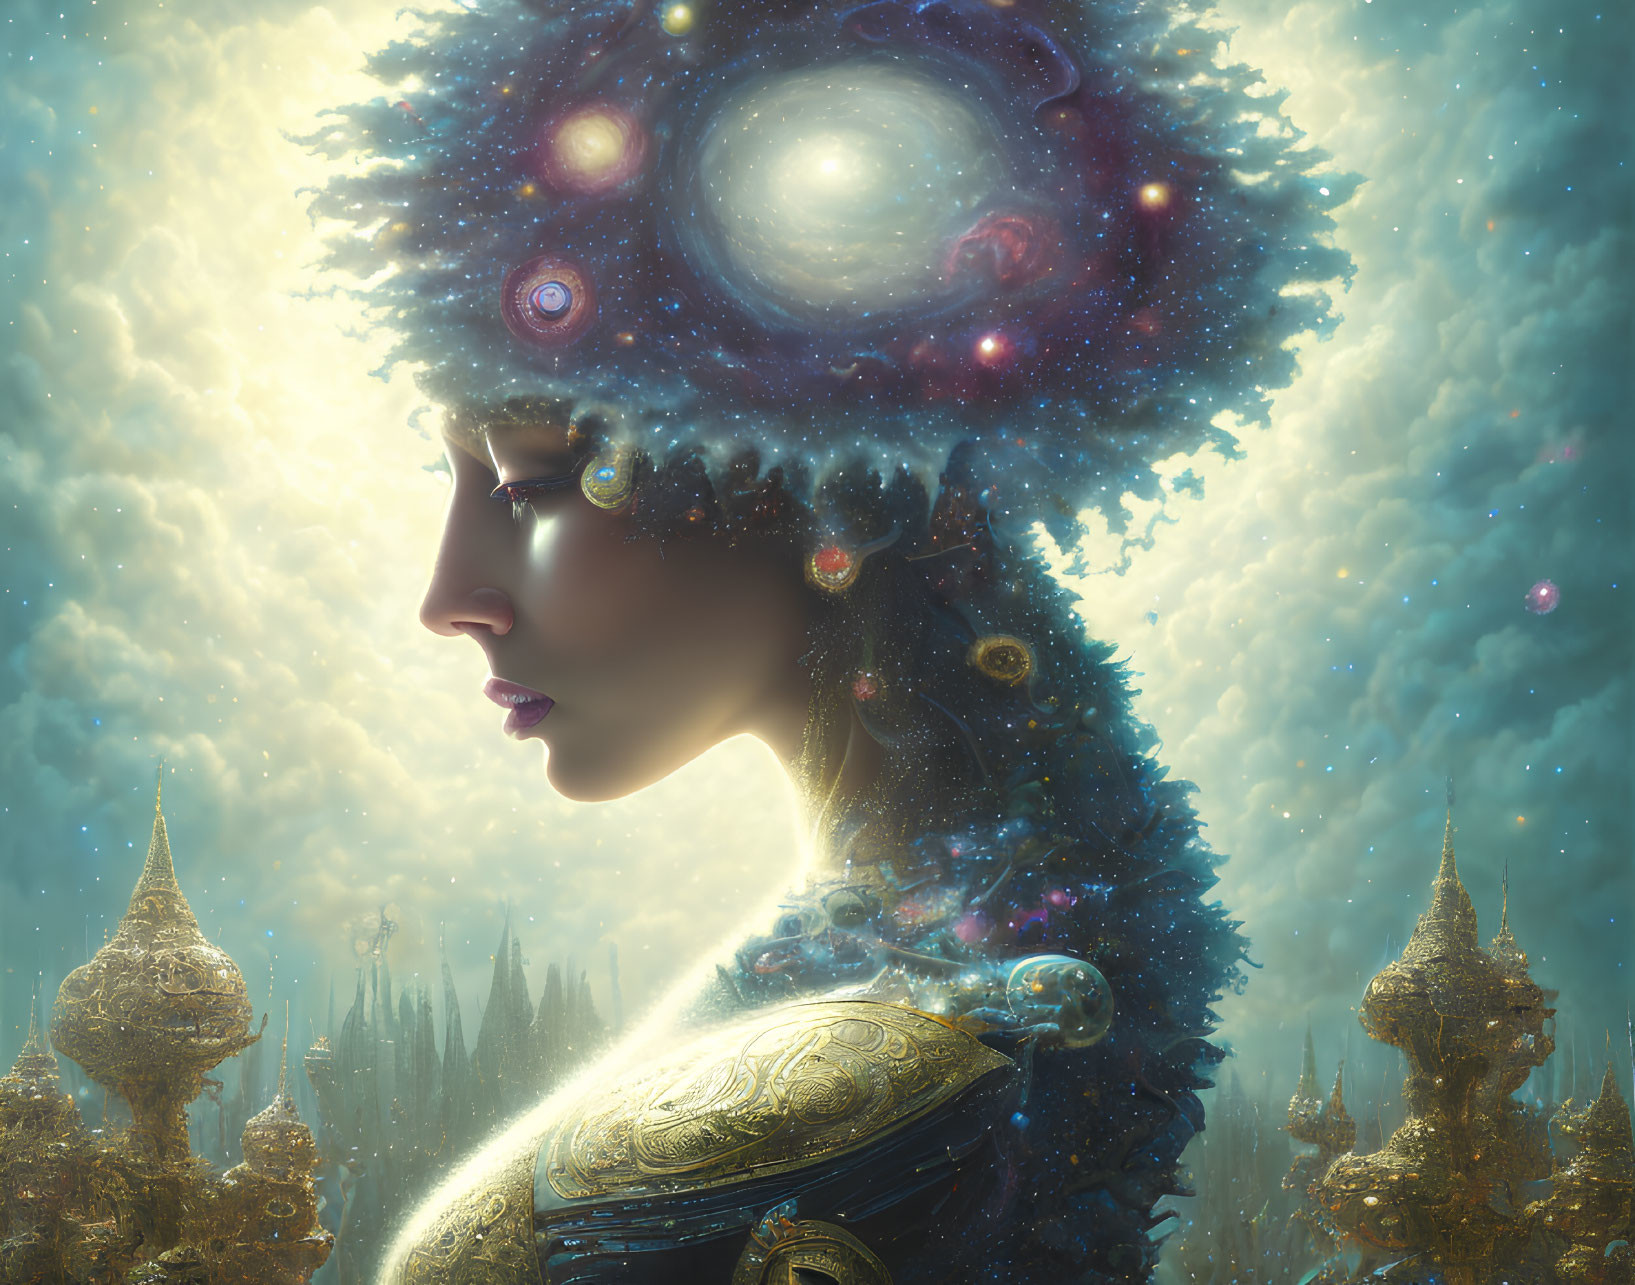 Cosmic-themed headdress on woman in fantastical landscape